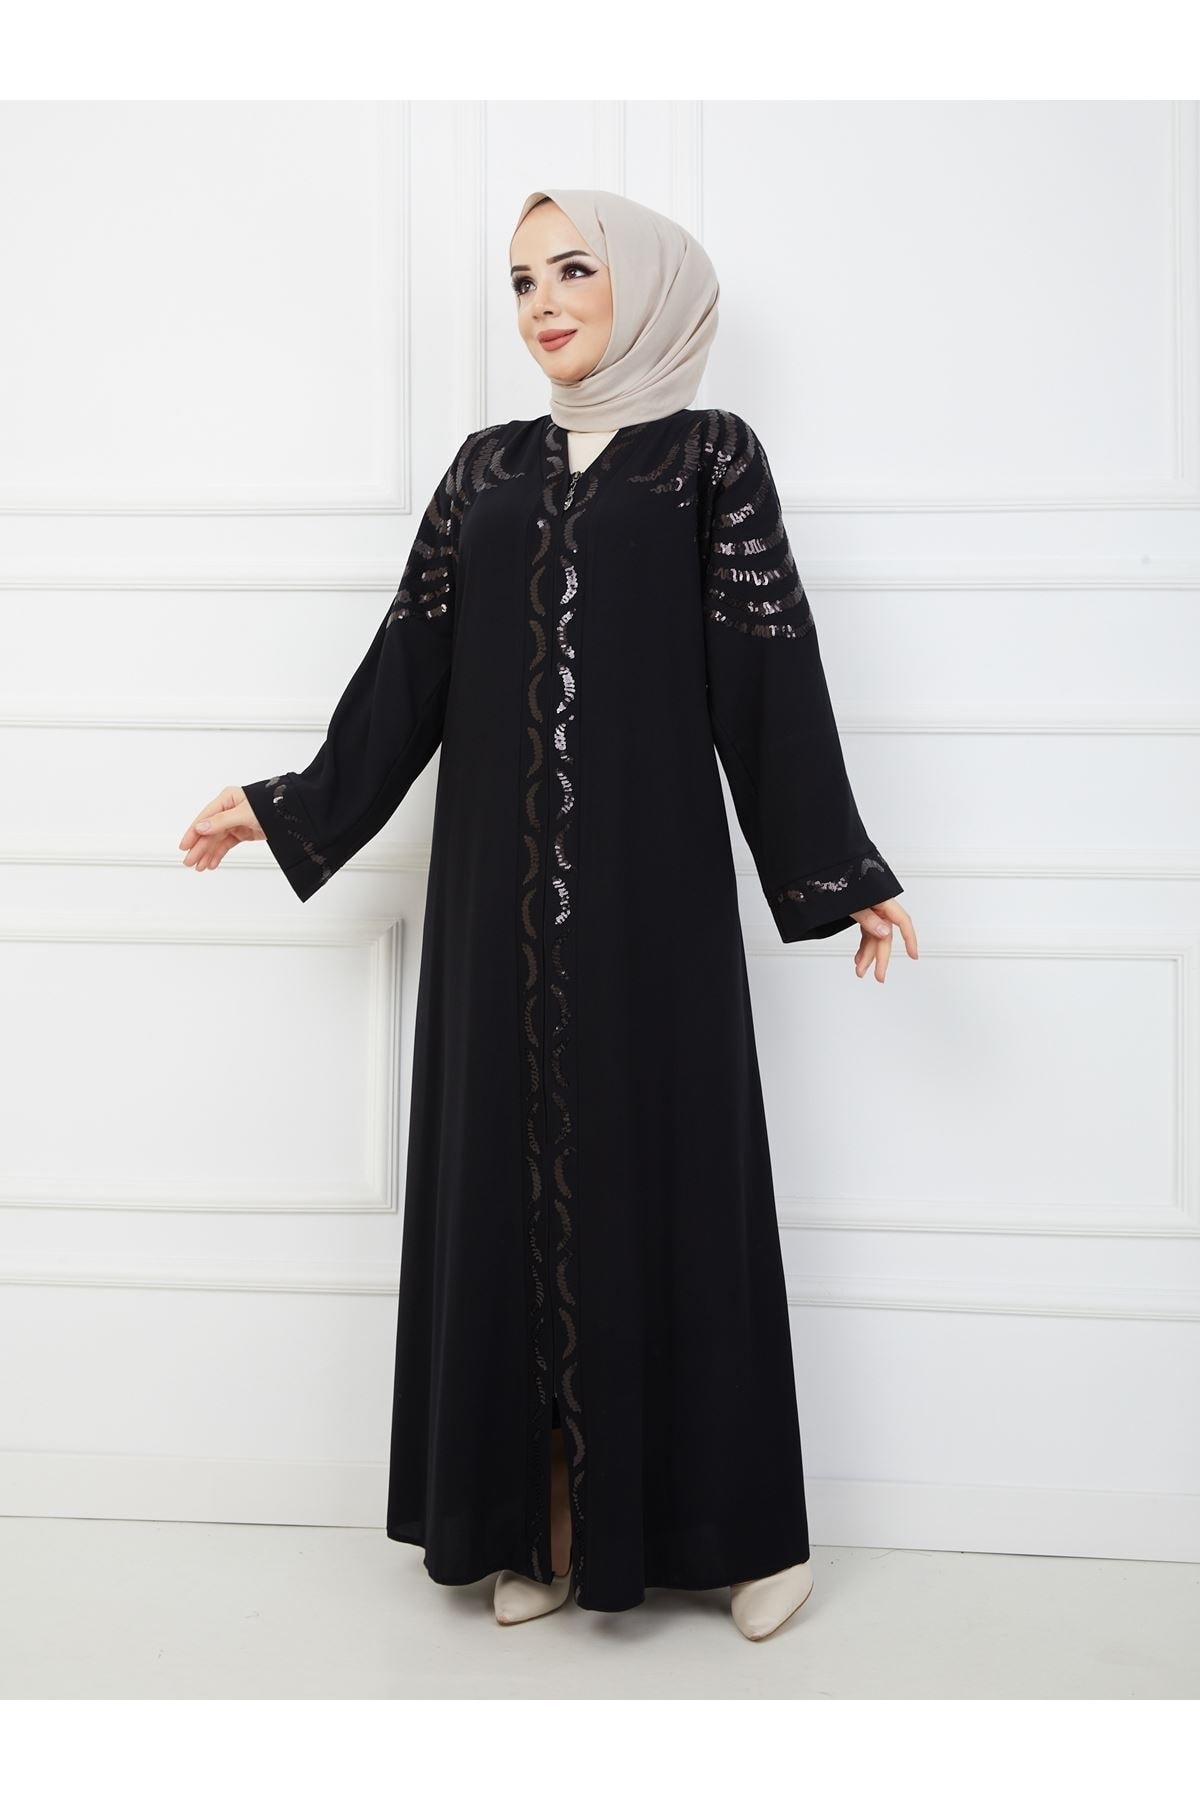 Zeynep Tesettür Aden Model Abaya - Siyah